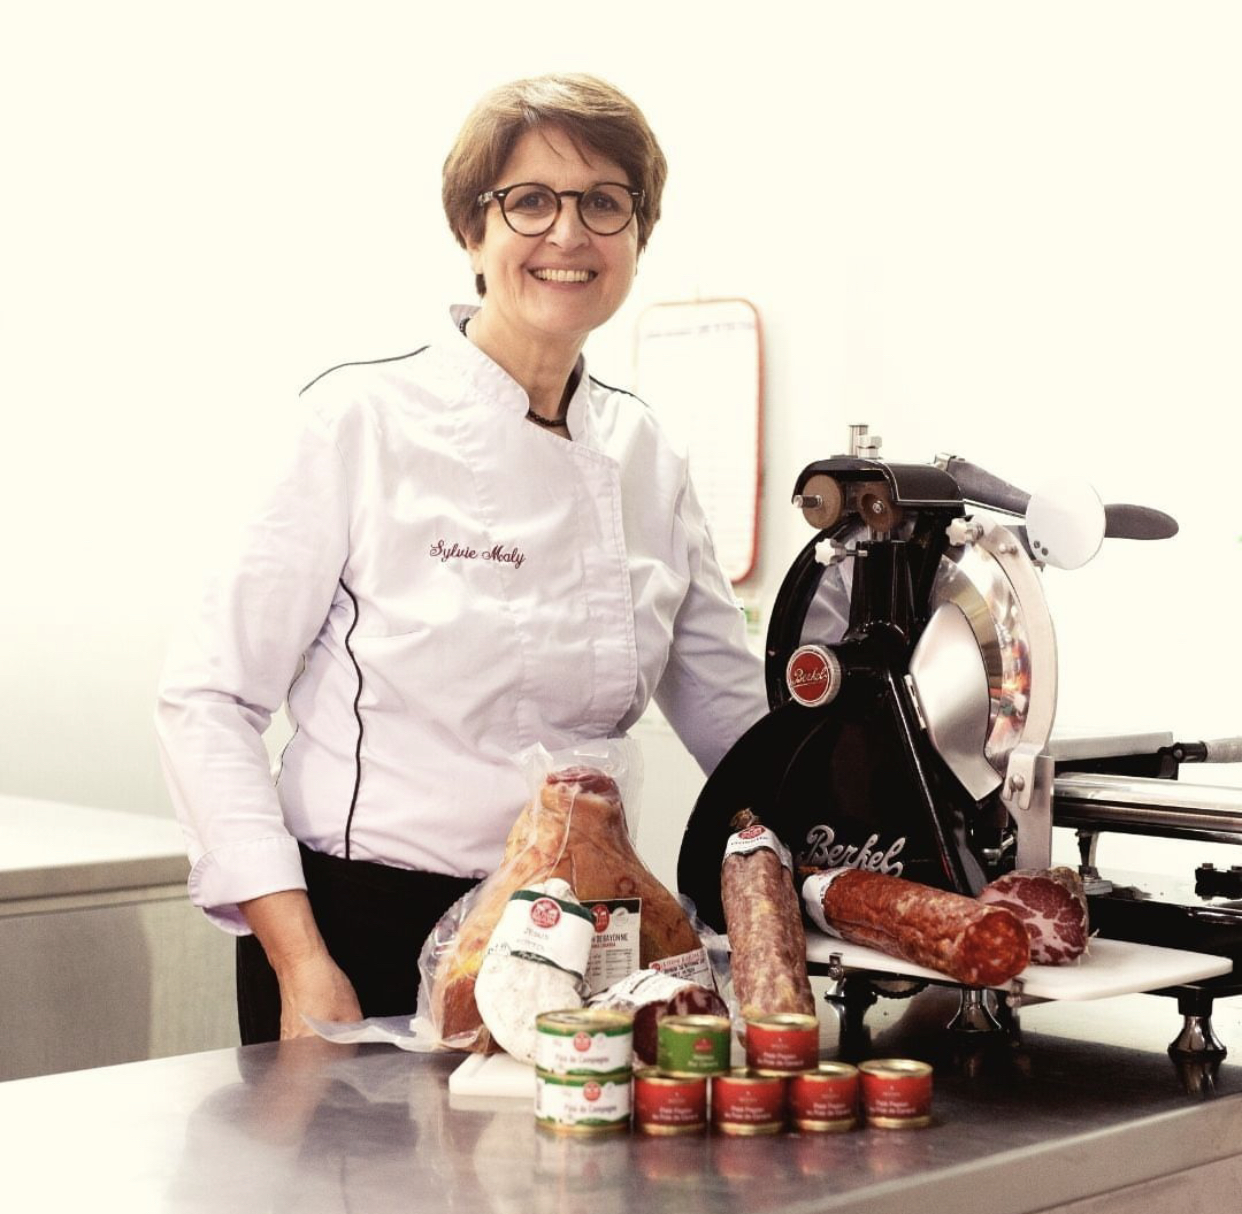 La cheffe cuisinière et co-gérante du restaurant Le Jardin Pêcheur, Sylvie Maly